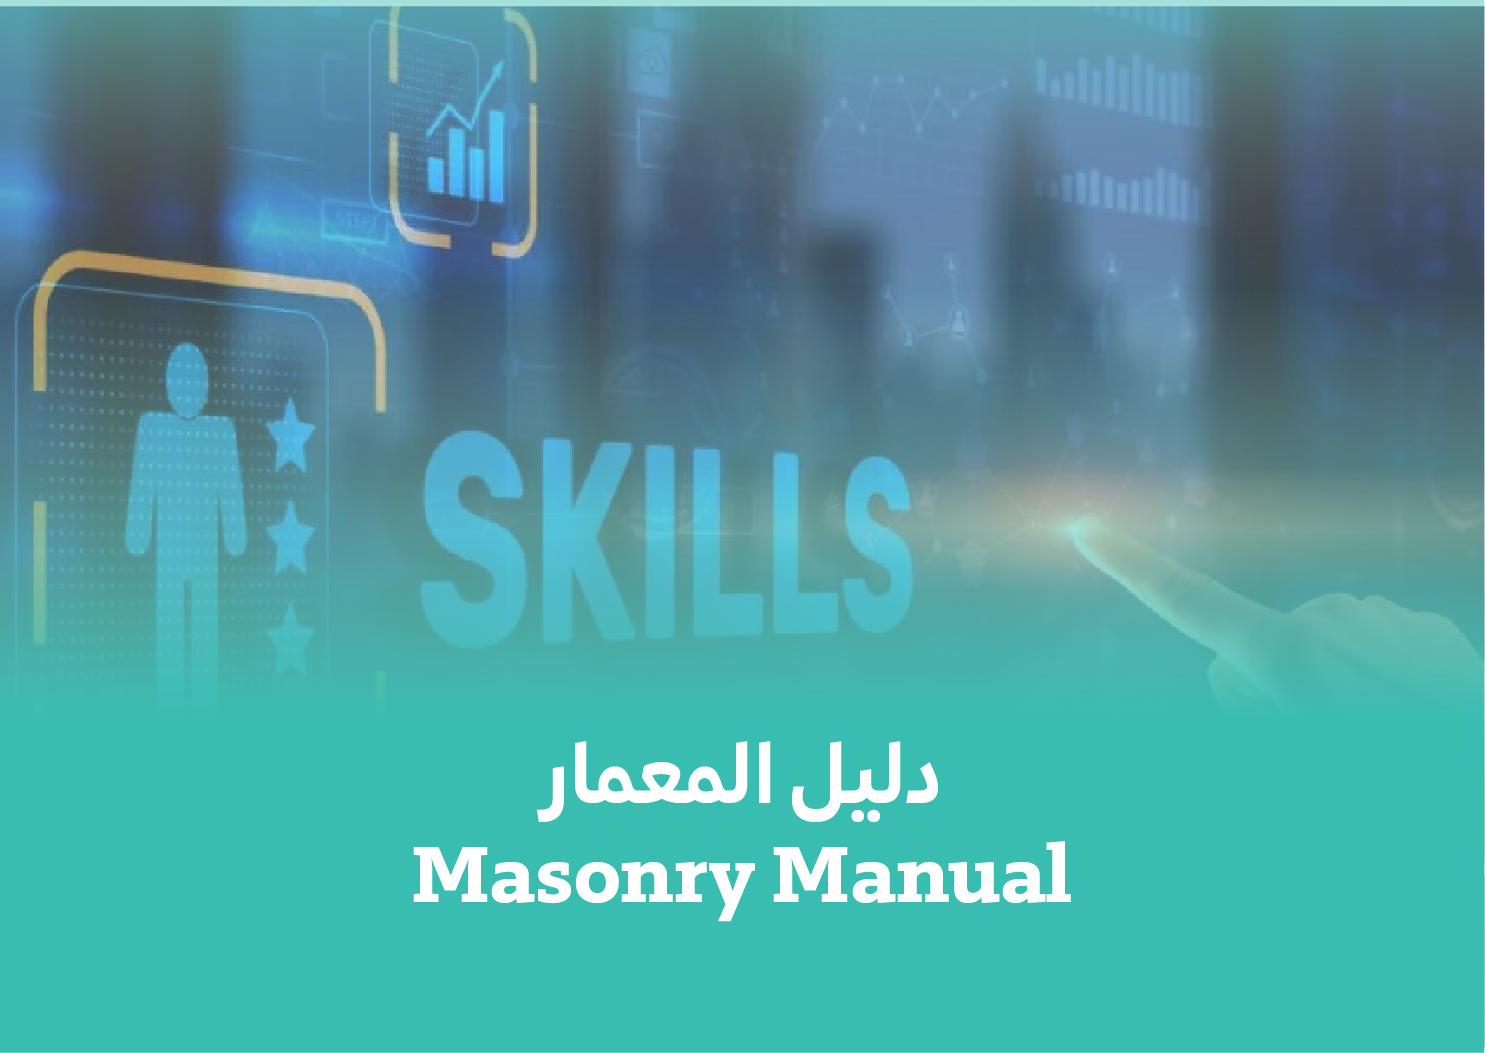 Masonary Manual